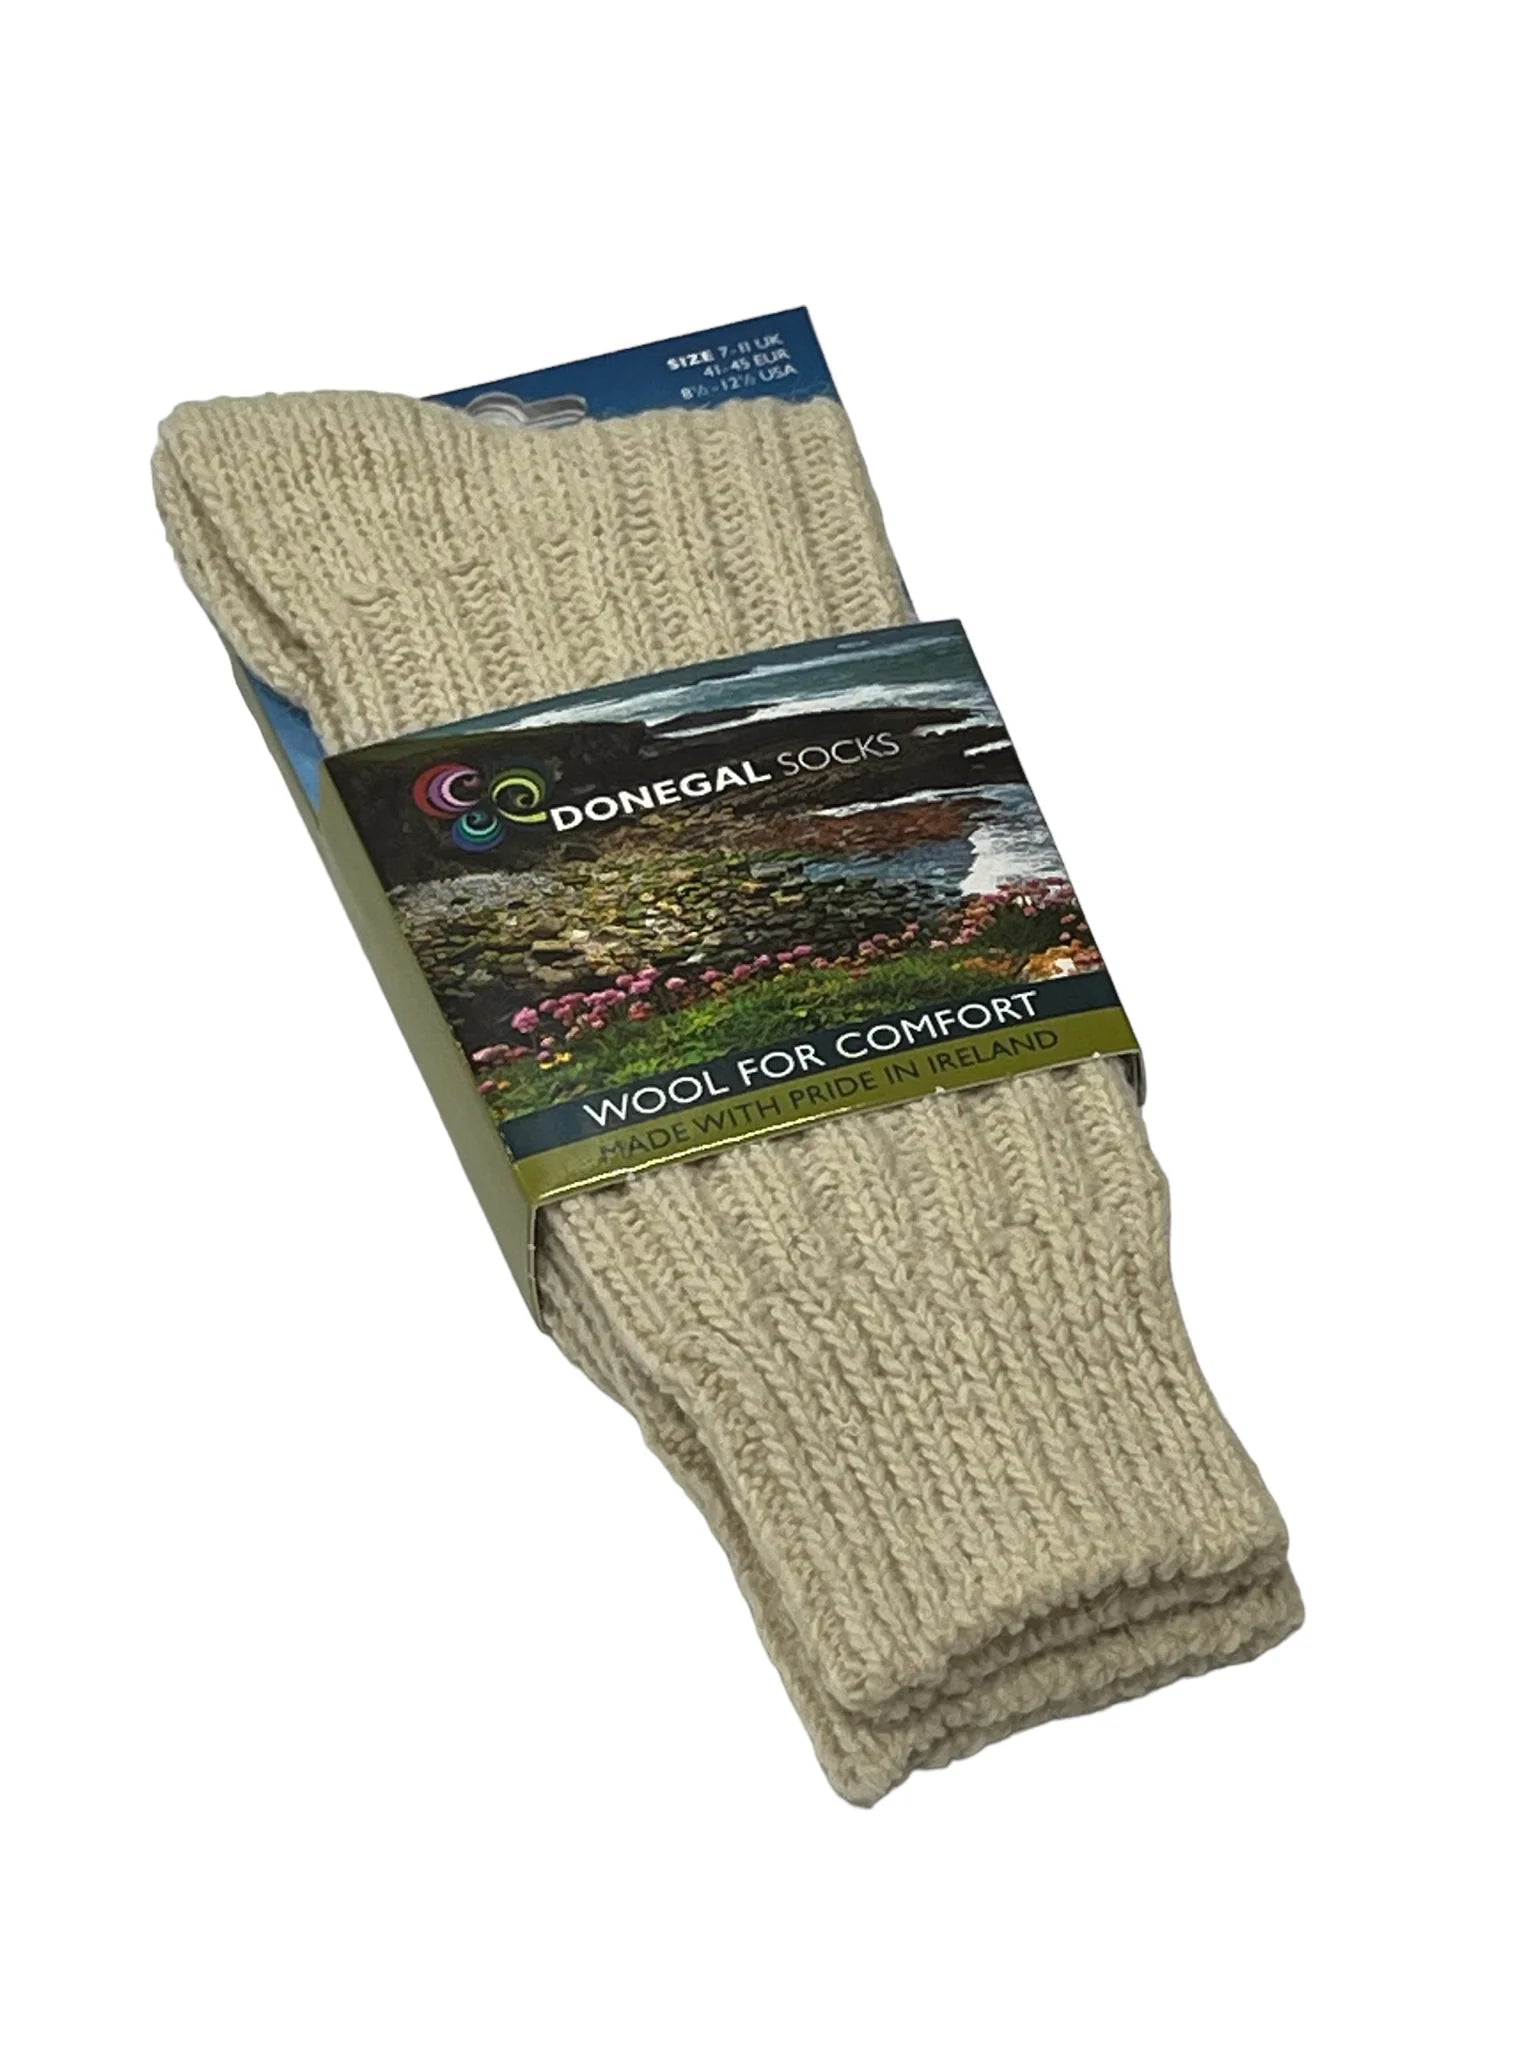 Traditional Donegal Women's Wool Socks in Moss Green